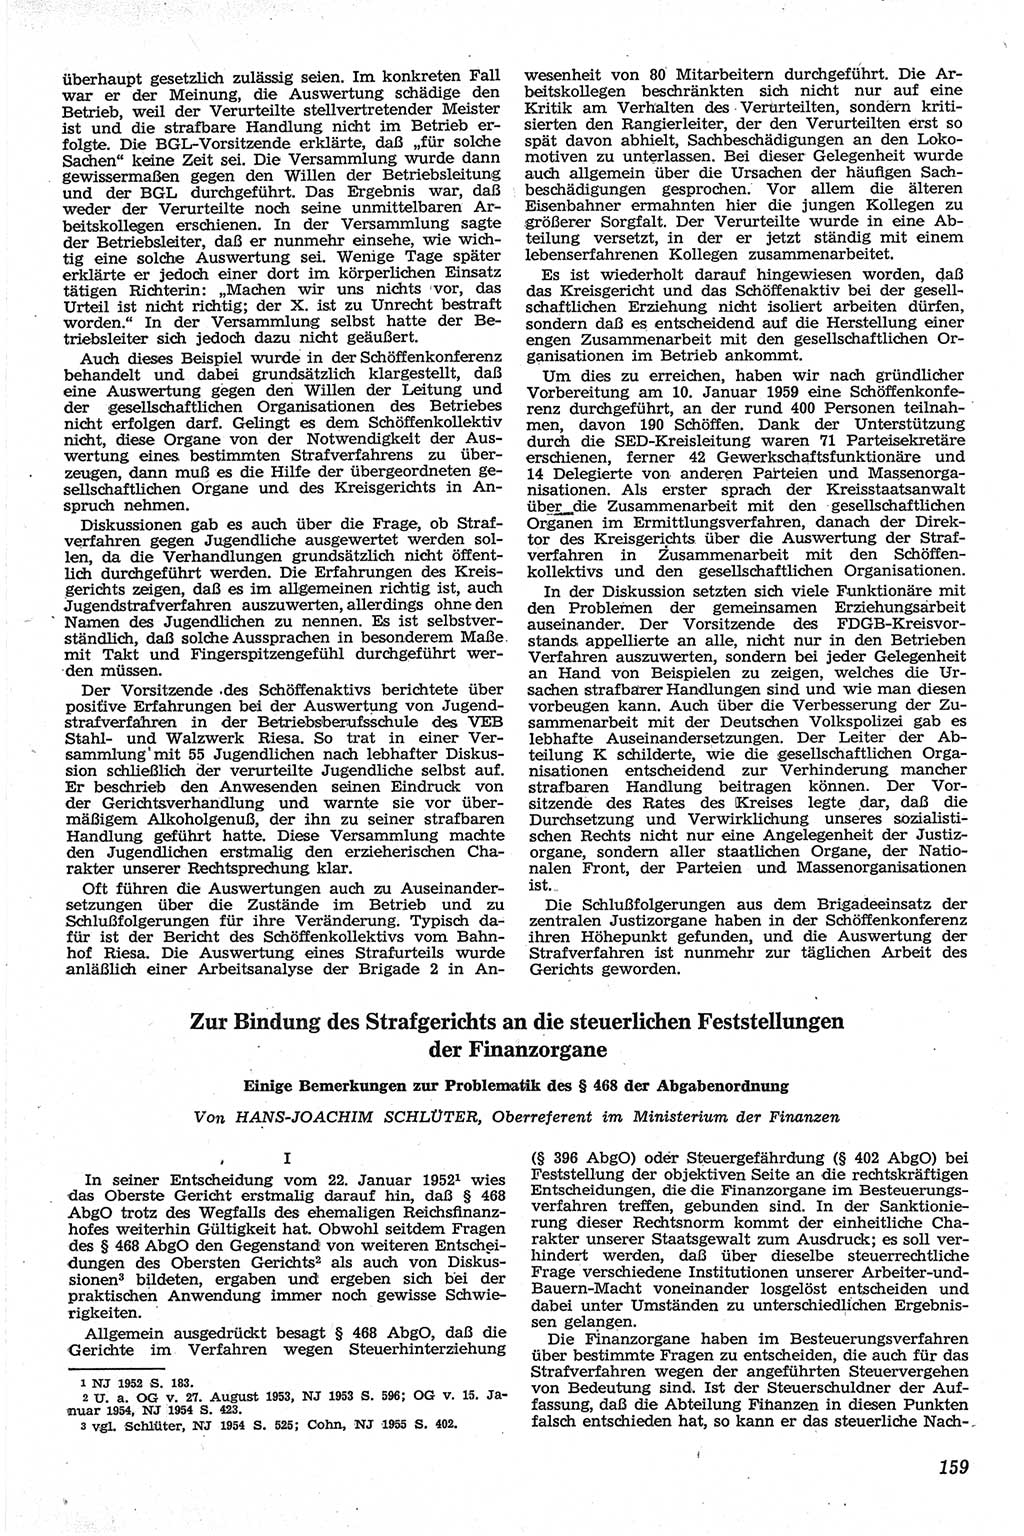 Neue Justiz (NJ), Zeitschrift für Recht und Rechtswissenschaft [Deutsche Demokratische Republik (DDR)], 13. Jahrgang 1959, Seite 159 (NJ DDR 1959, S. 159)